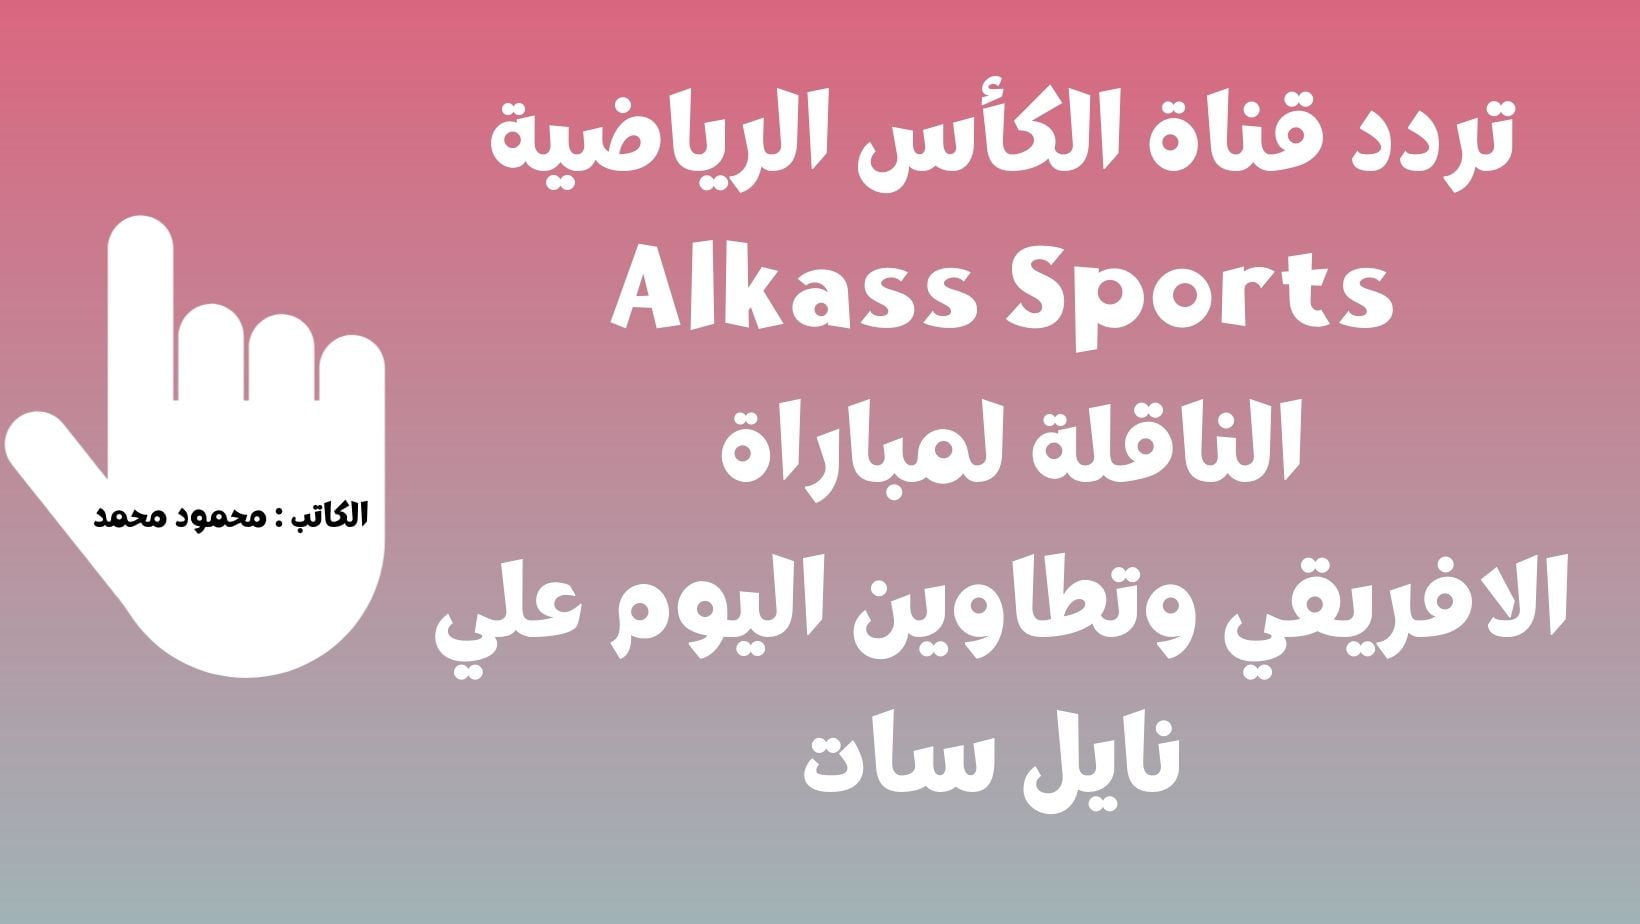 تردد قناة الكأس الرياضية Alkass